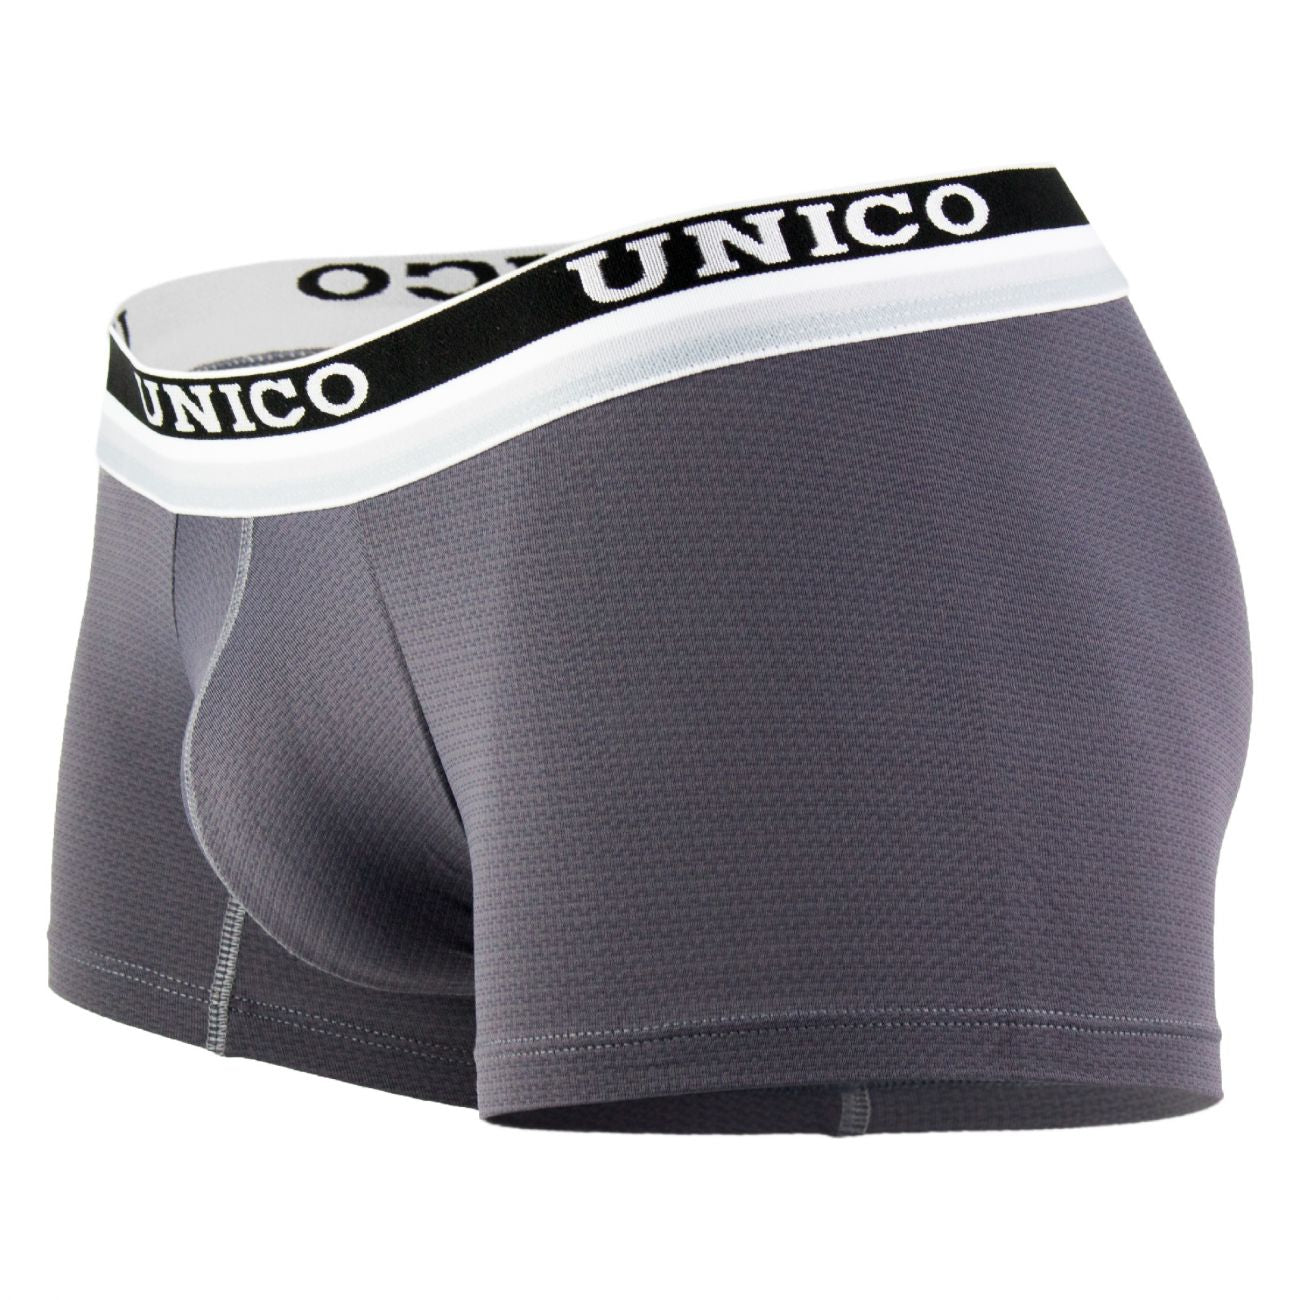 Unico 1802010013196 Boxer Briefs Raiz Black